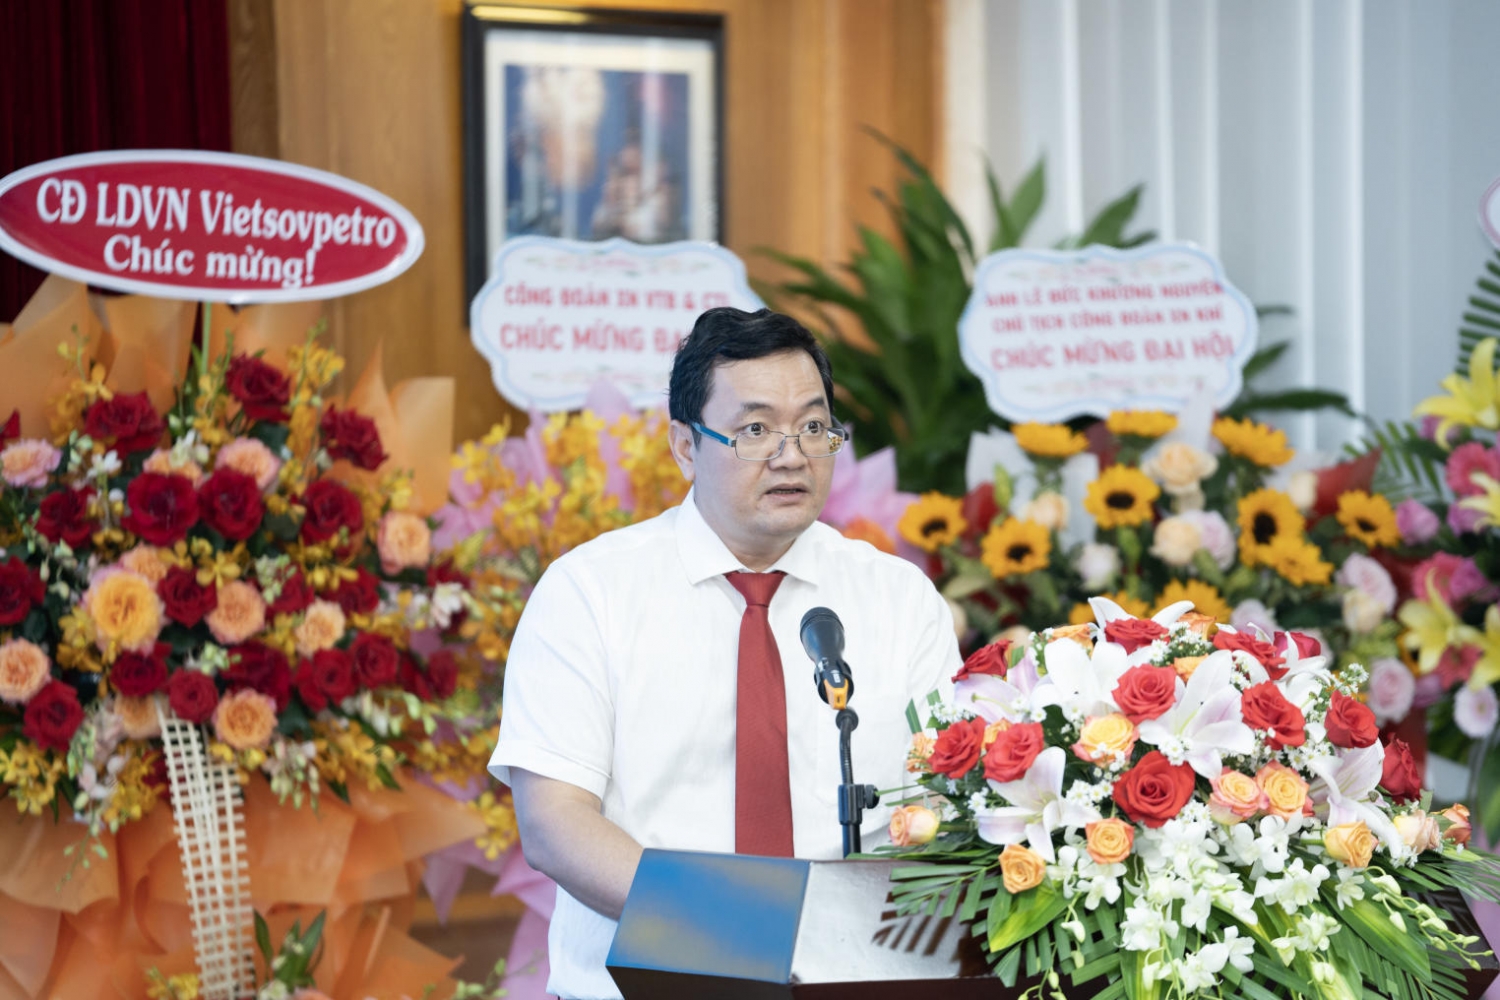 đồng chí Nguyễn Thanh Phong, Phó Chủ tịch Công đoàn XN Khí đại diện BCH Công đoàn đã trình bày báo cáo tổng kết hoạt động khóa VIII, nhiệm kỳ 2017 - 2022 và phương hướng, nhiệm vụ, giải pháp nhiệm kỳ 2023 - 2028.